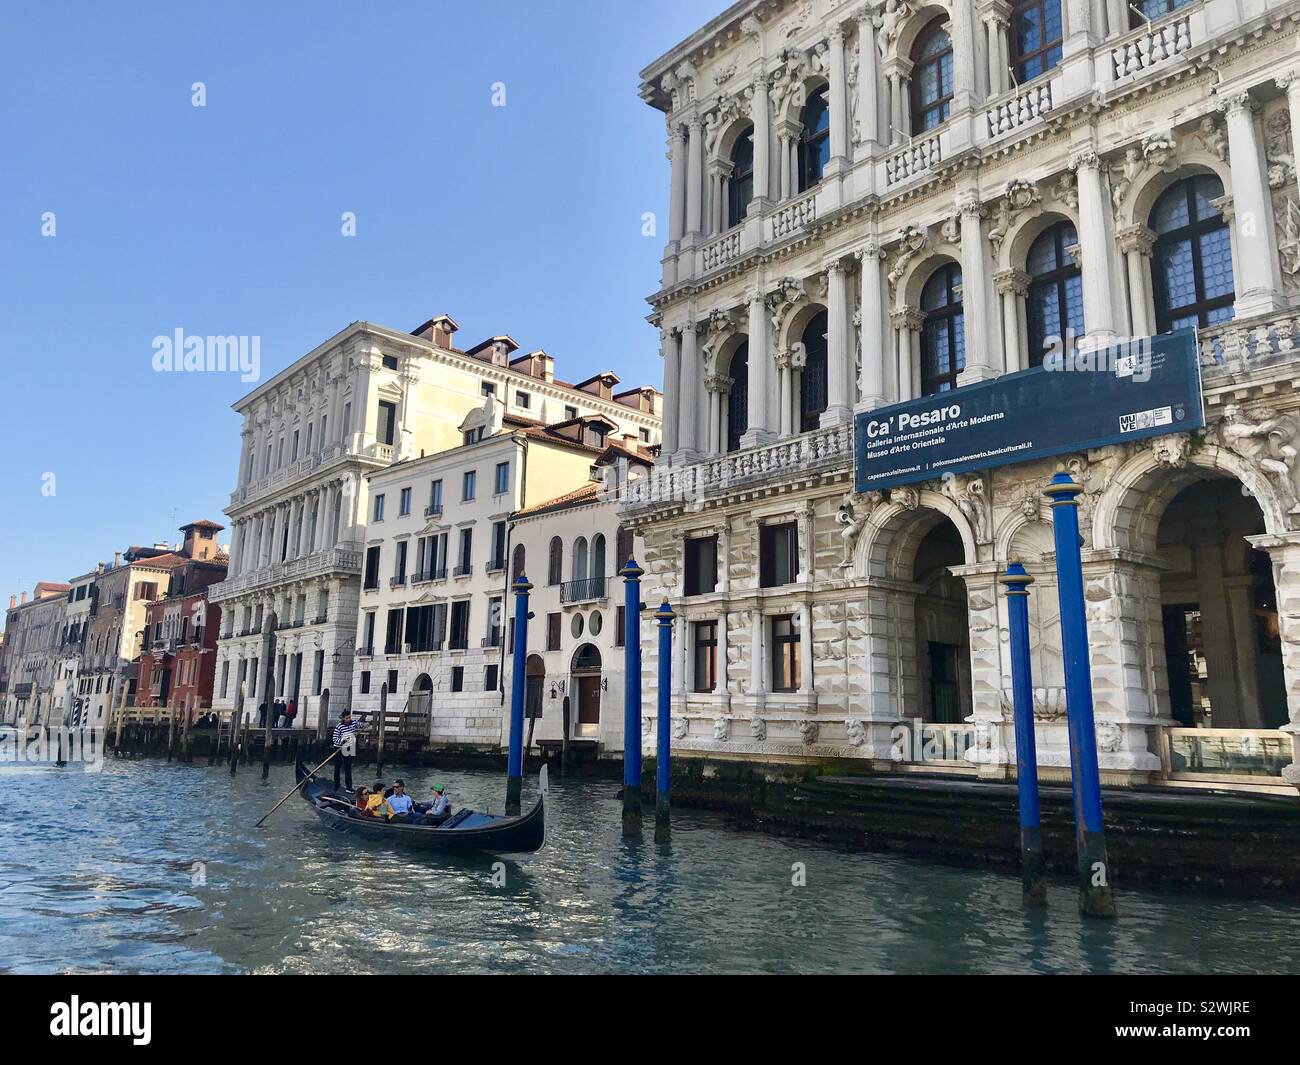 Eine Gondel vorbei vor der Ca' Pesaro internationale Galerie für Moderne Kunst, am Grand Canal in Venedig, Italien, Europa Stockfoto